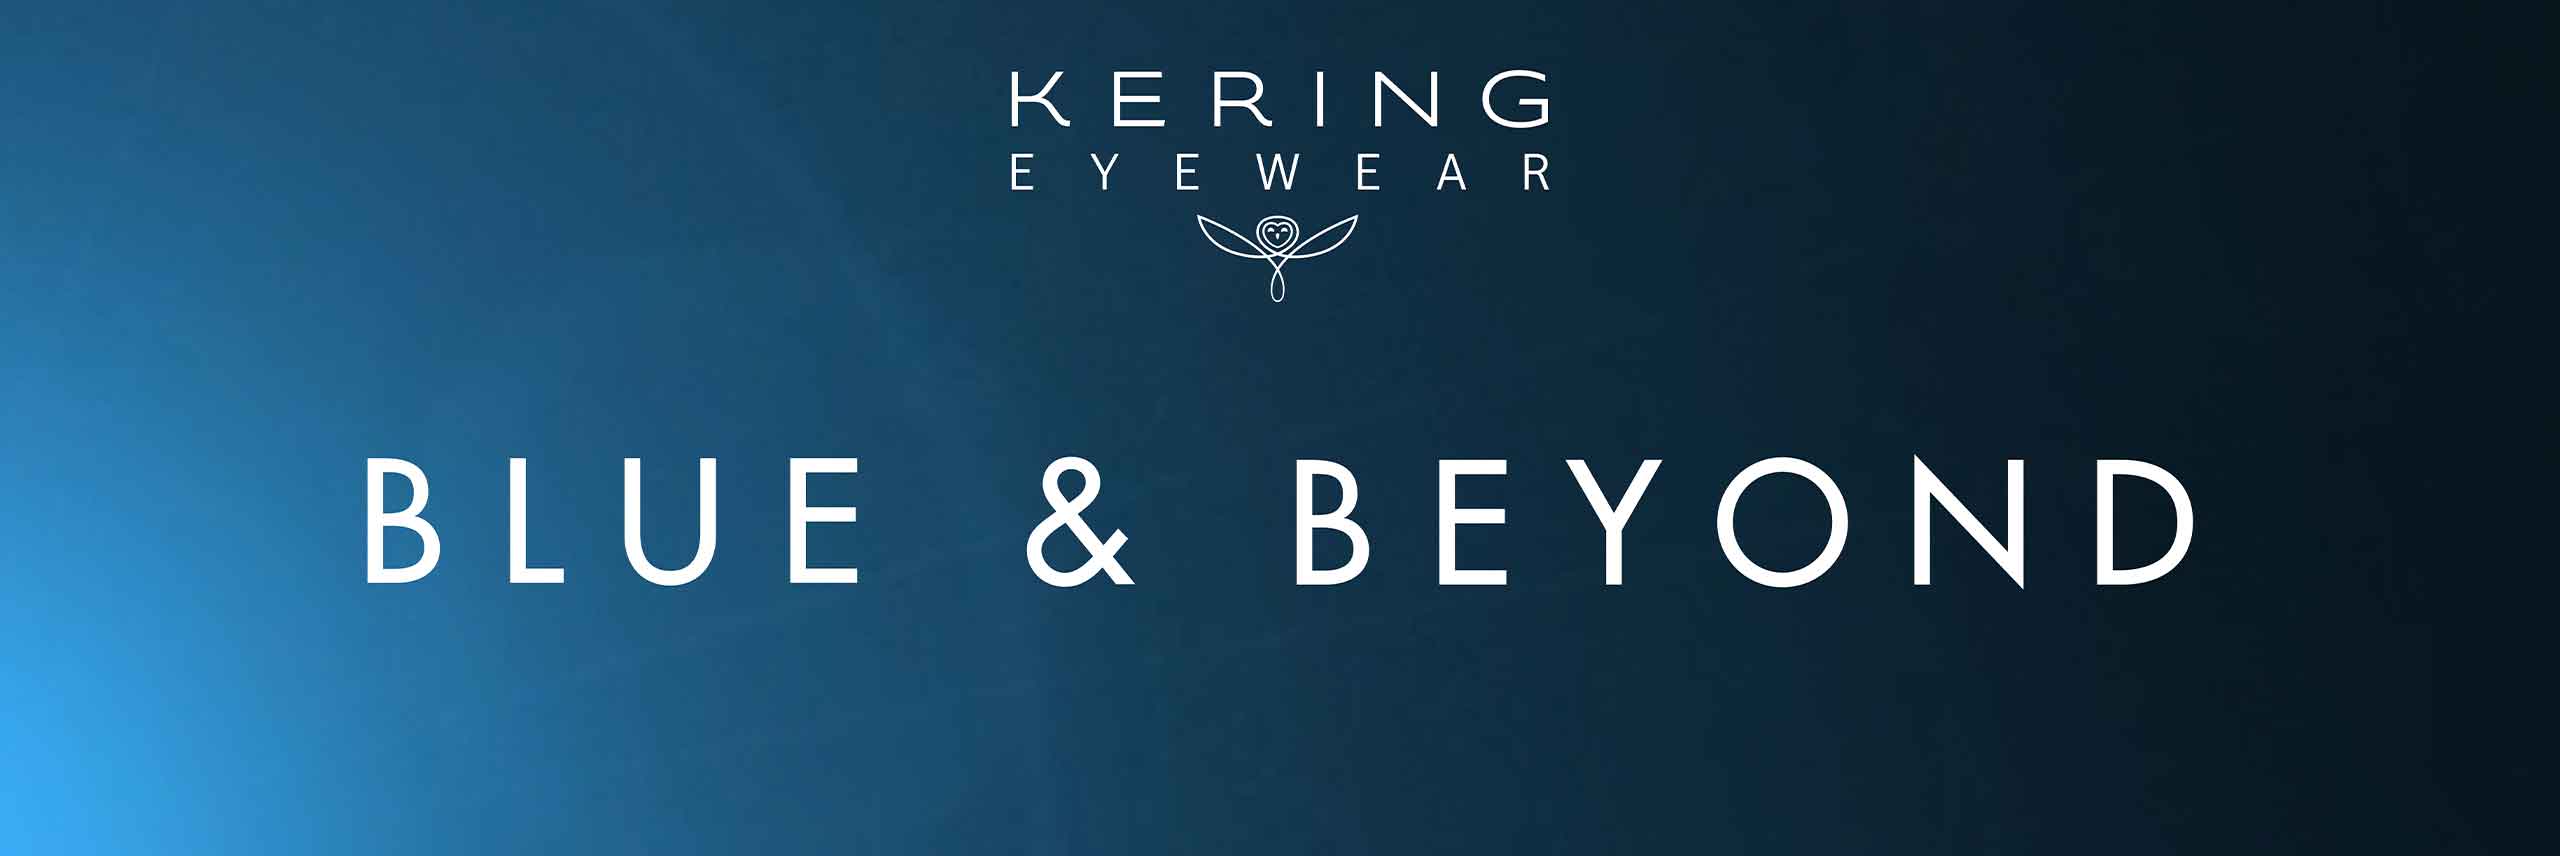 kering eyewear brands